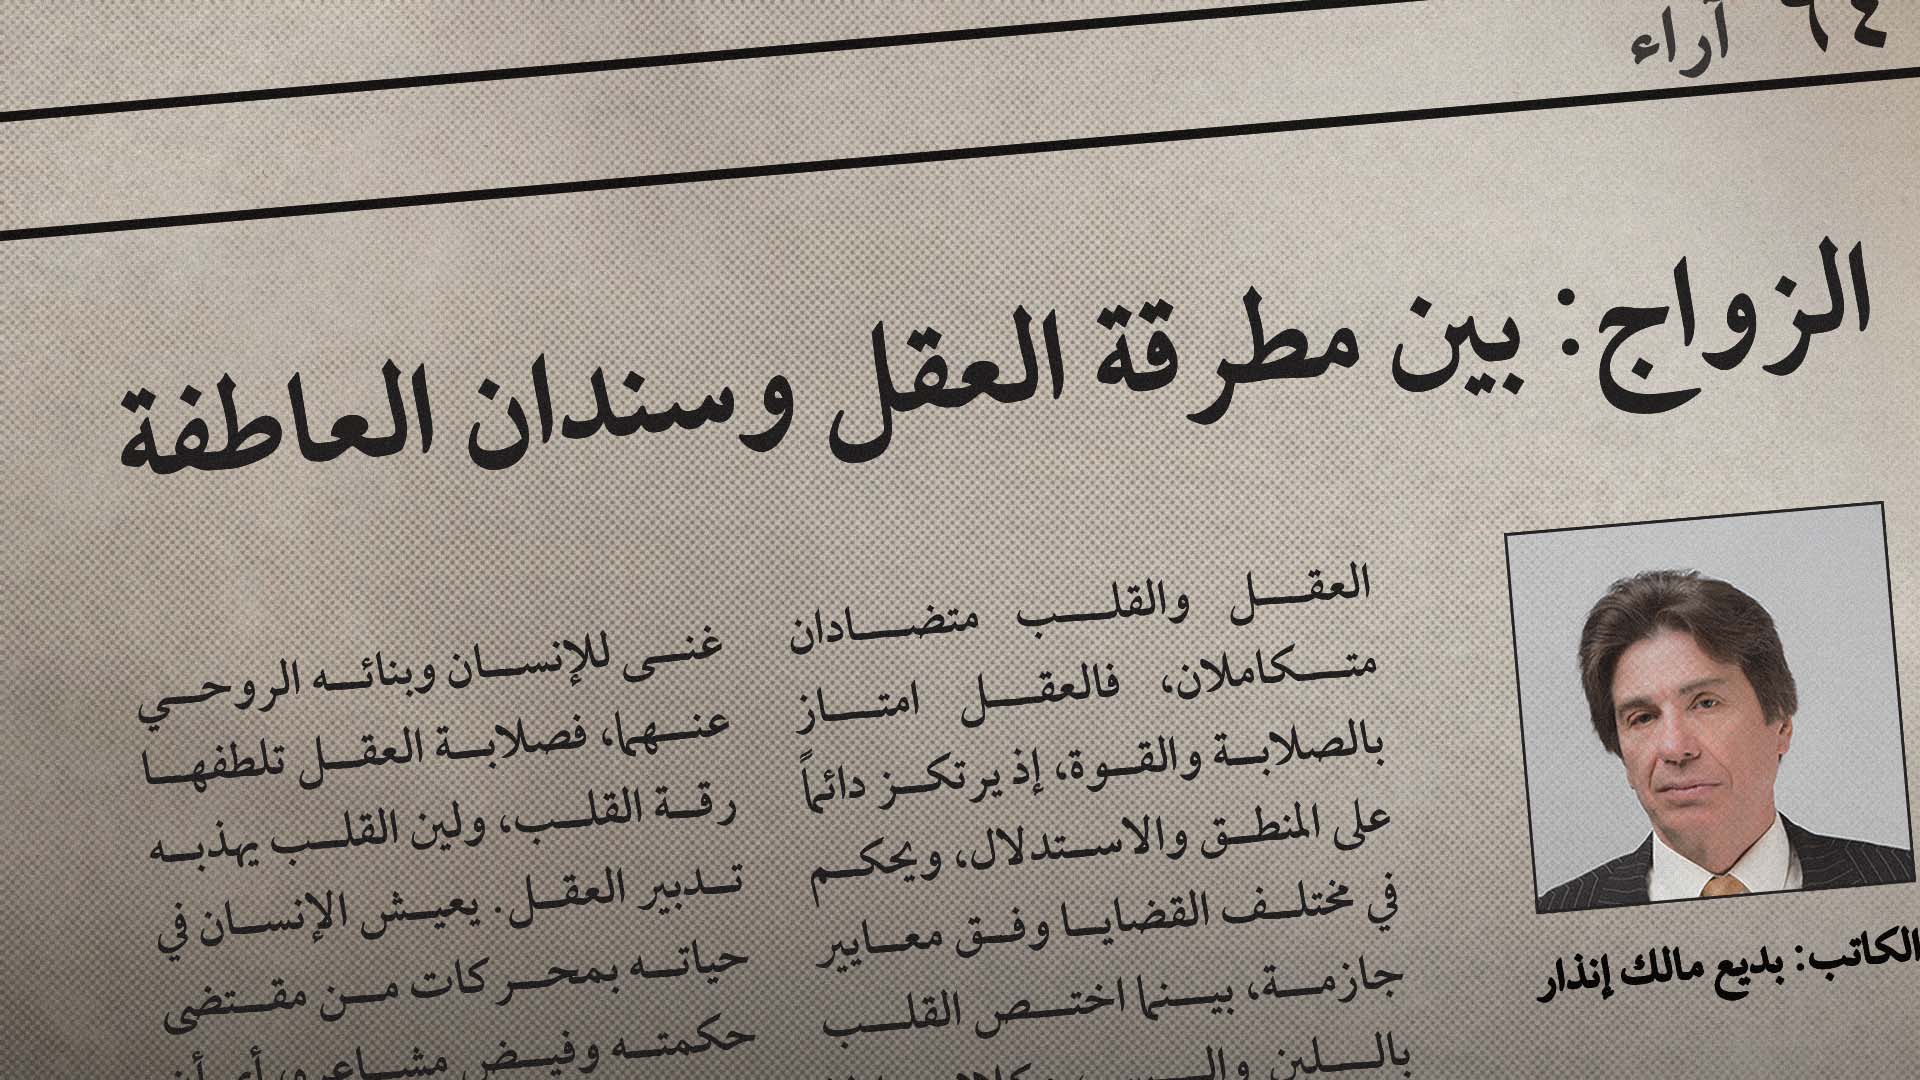 صورة كاتب صحفي يثري اللغة العربية باستخدامه «المطرقة والسندان» في عنوان مقاله